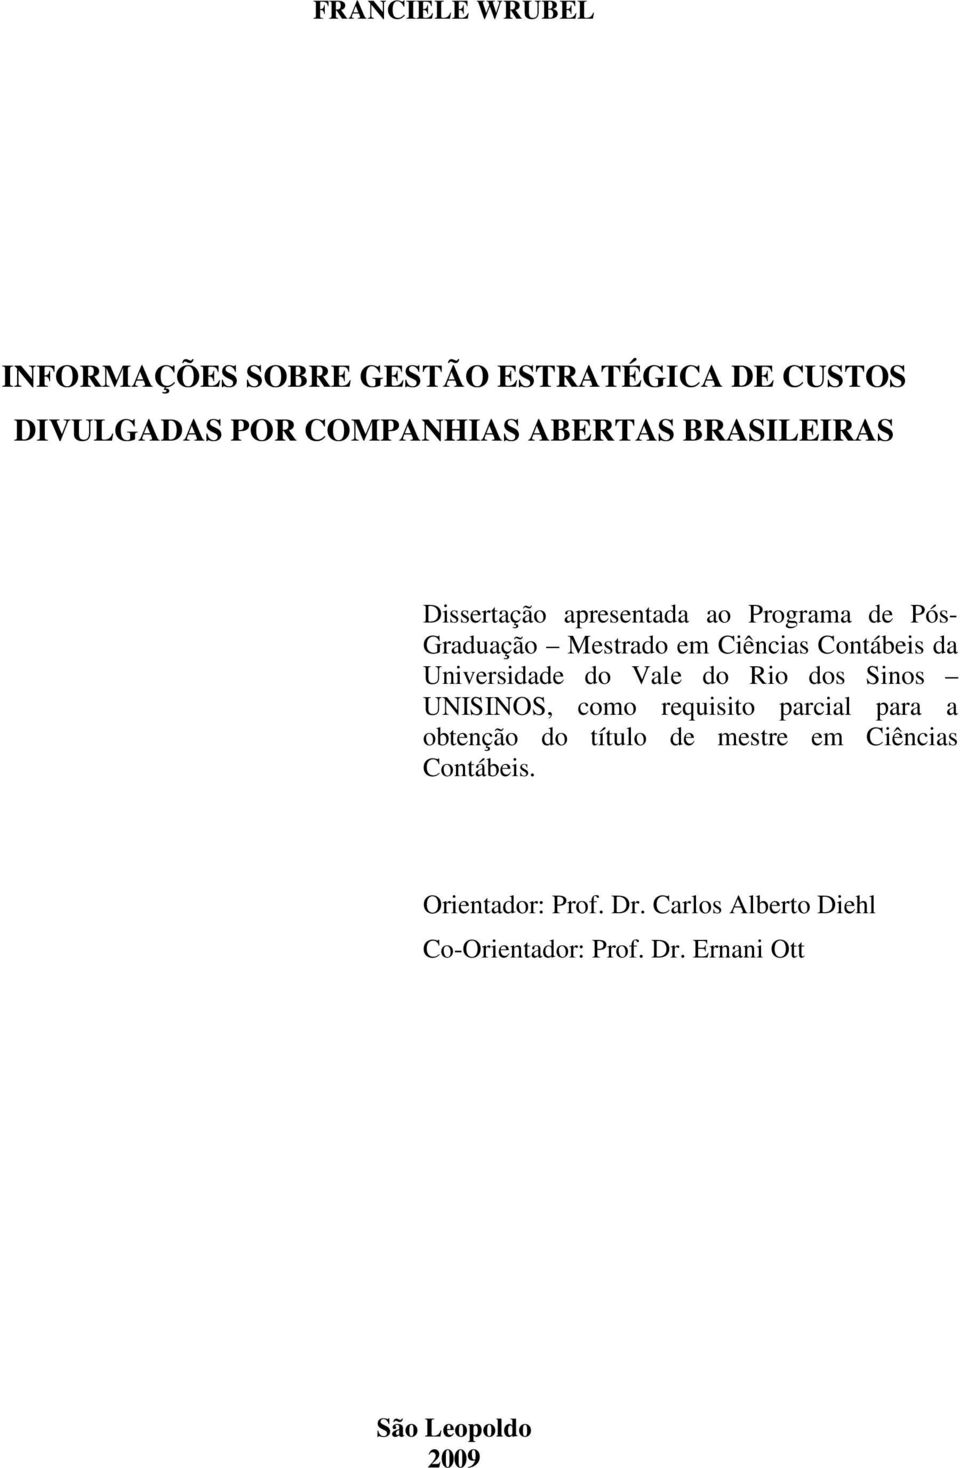 Universidade do Vale do Rio dos Sinos UNISINOS, como requisito parcial para a obtenção do título de